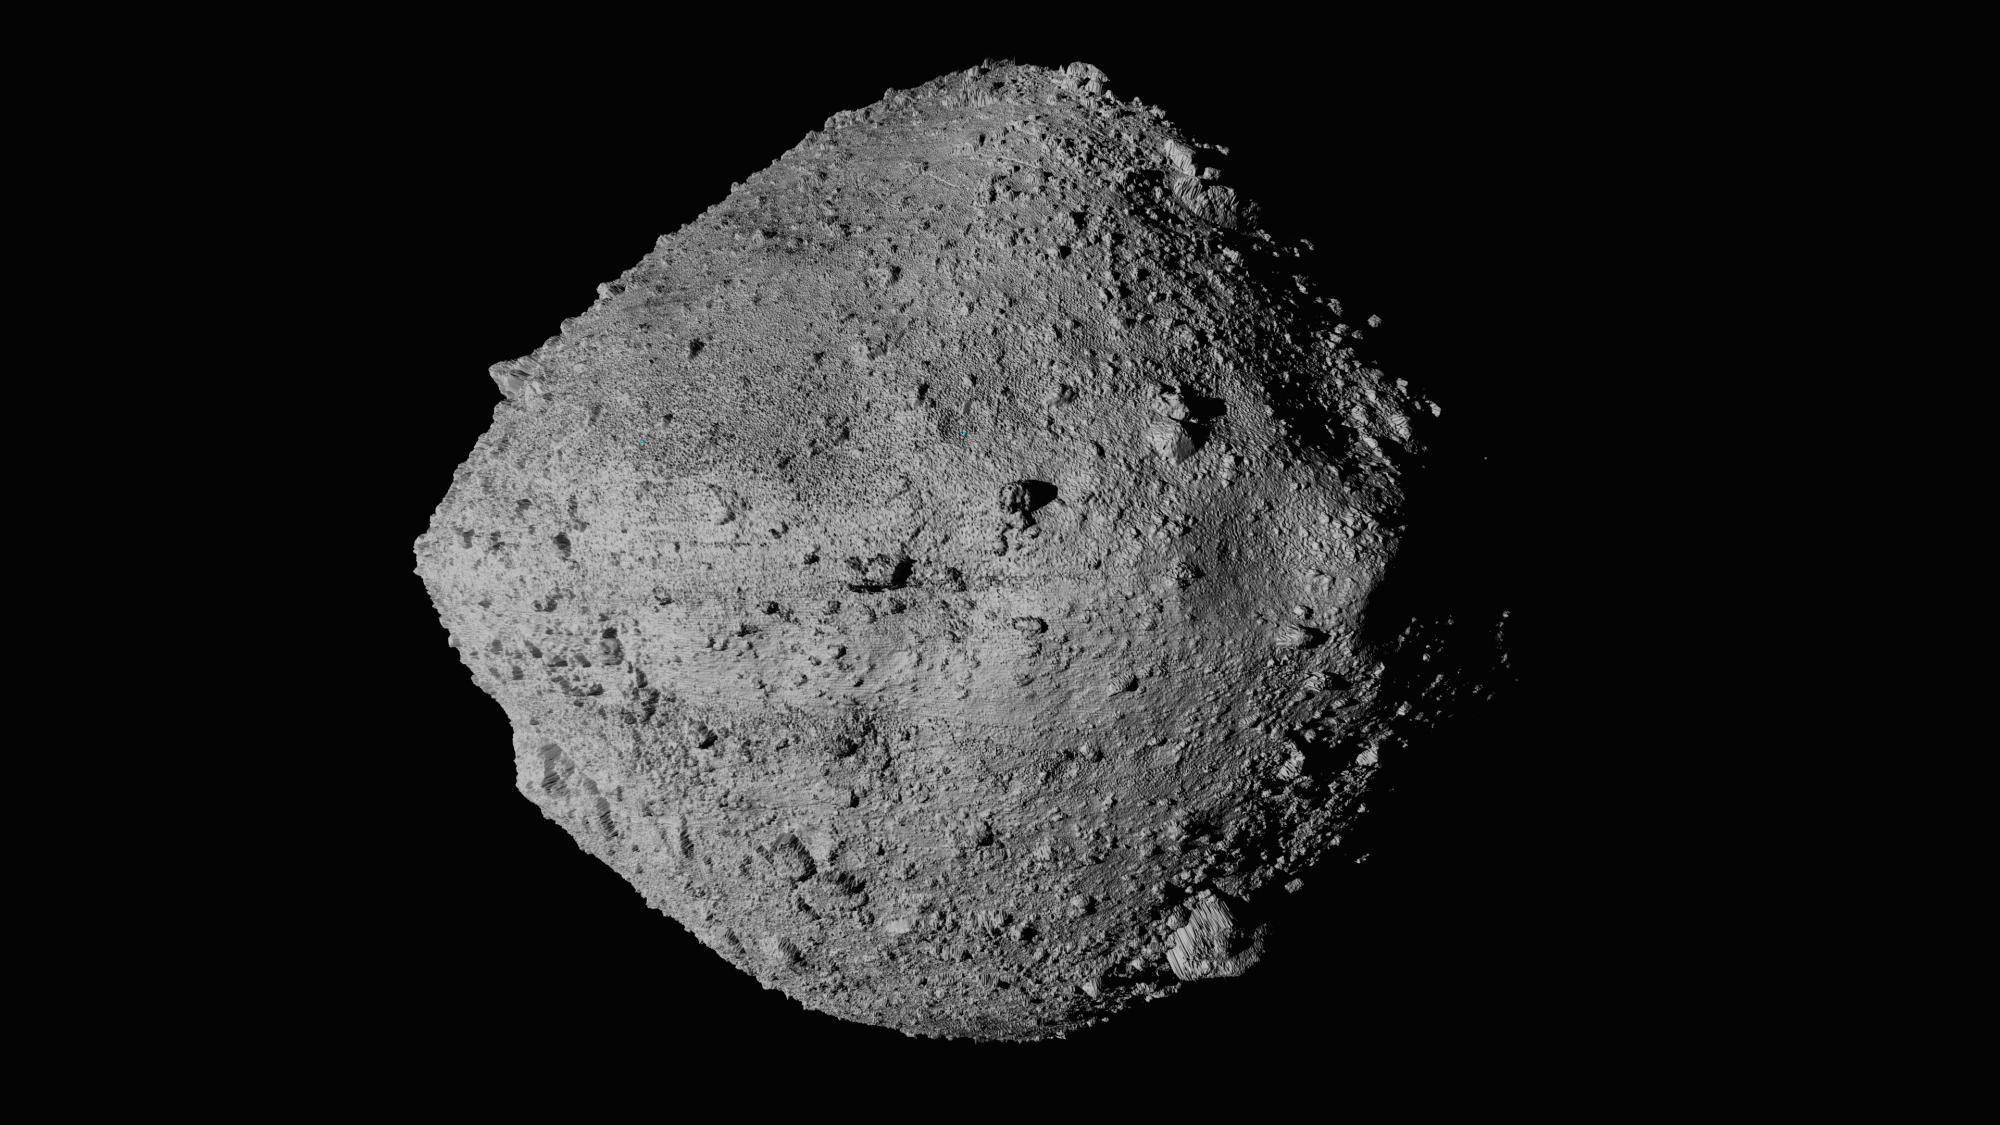 Landingen på den lille asteroiden, som har en radius på cirka 250 meter, var vellykket. 